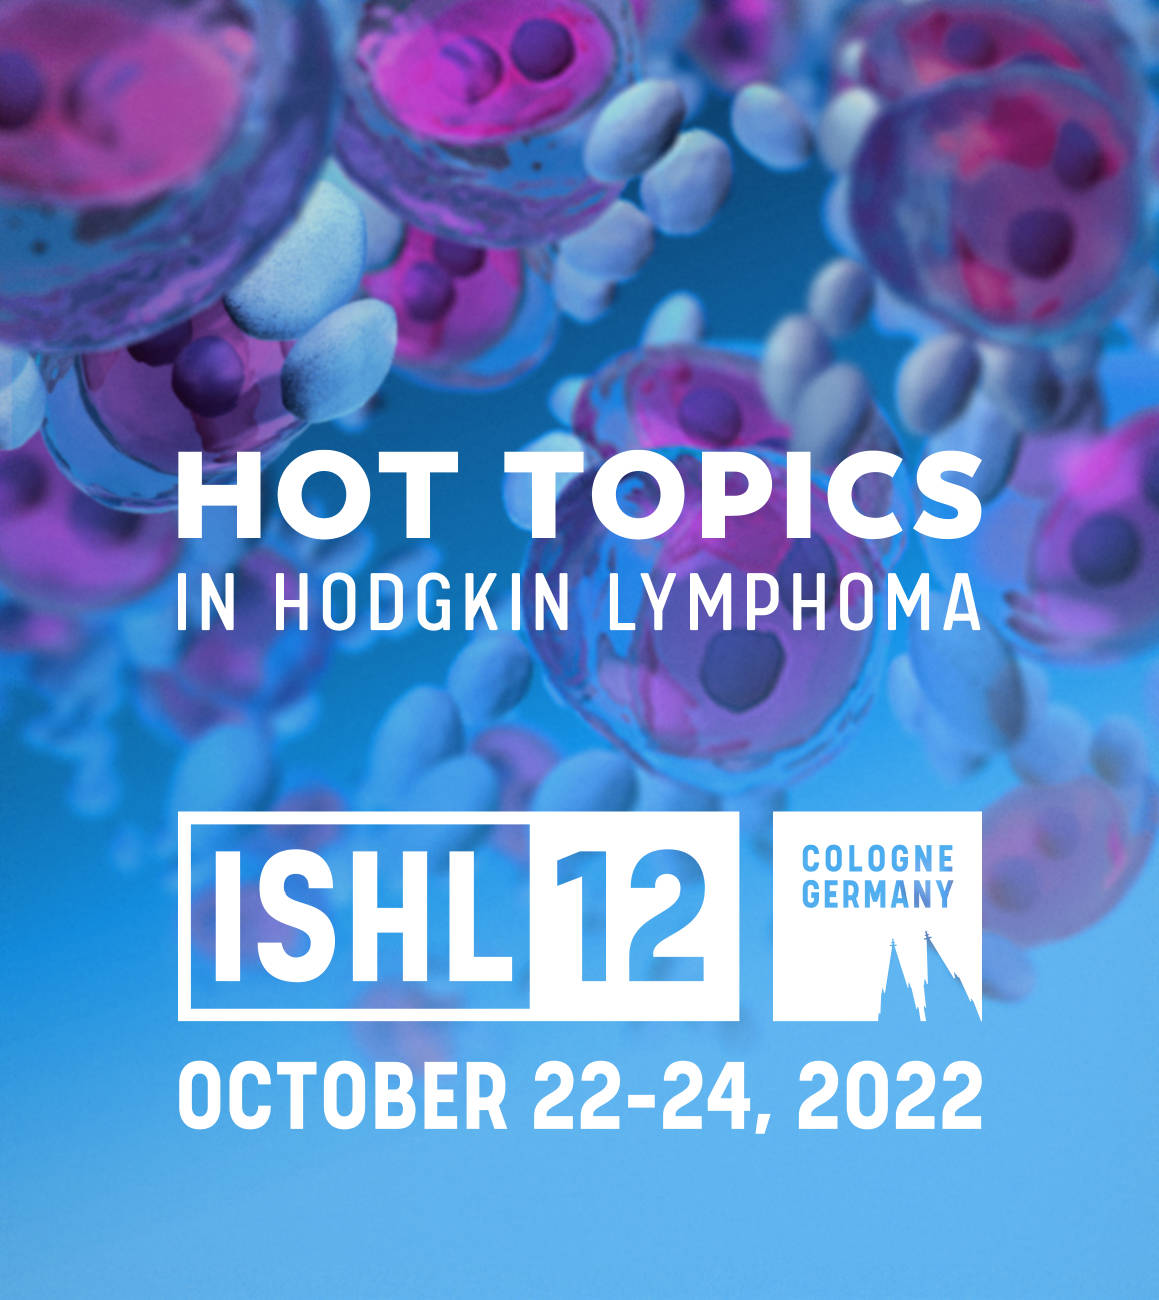 ISHL12 – Hot Topics in Hodgkin lymphoma